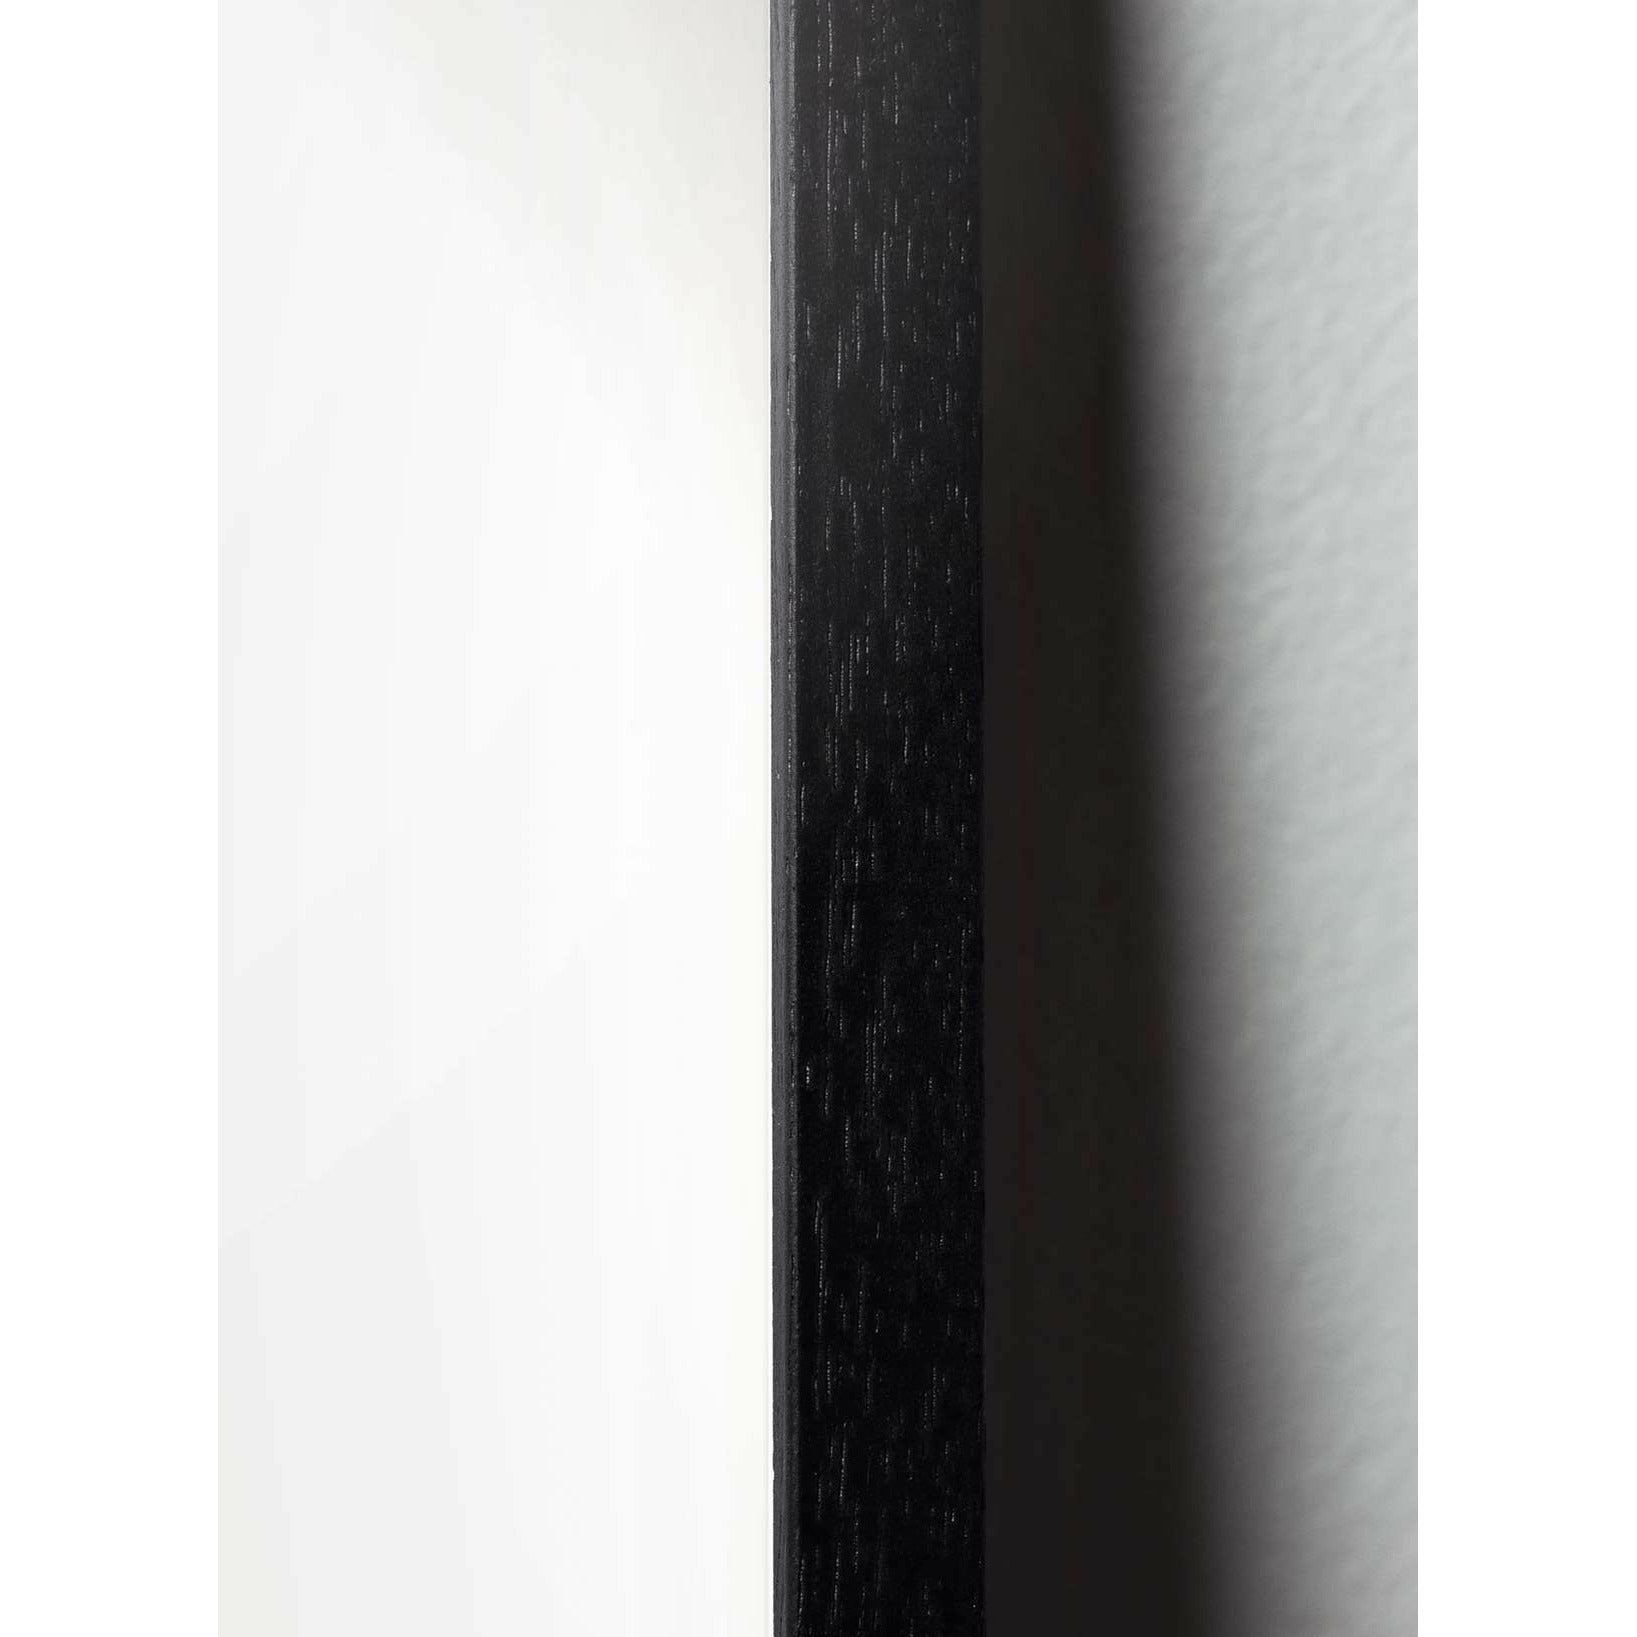 brainchild Pudota klassinen juliste, runko mustalla lakatulla puulla 70x100 cm, hiekkavärinen tausta